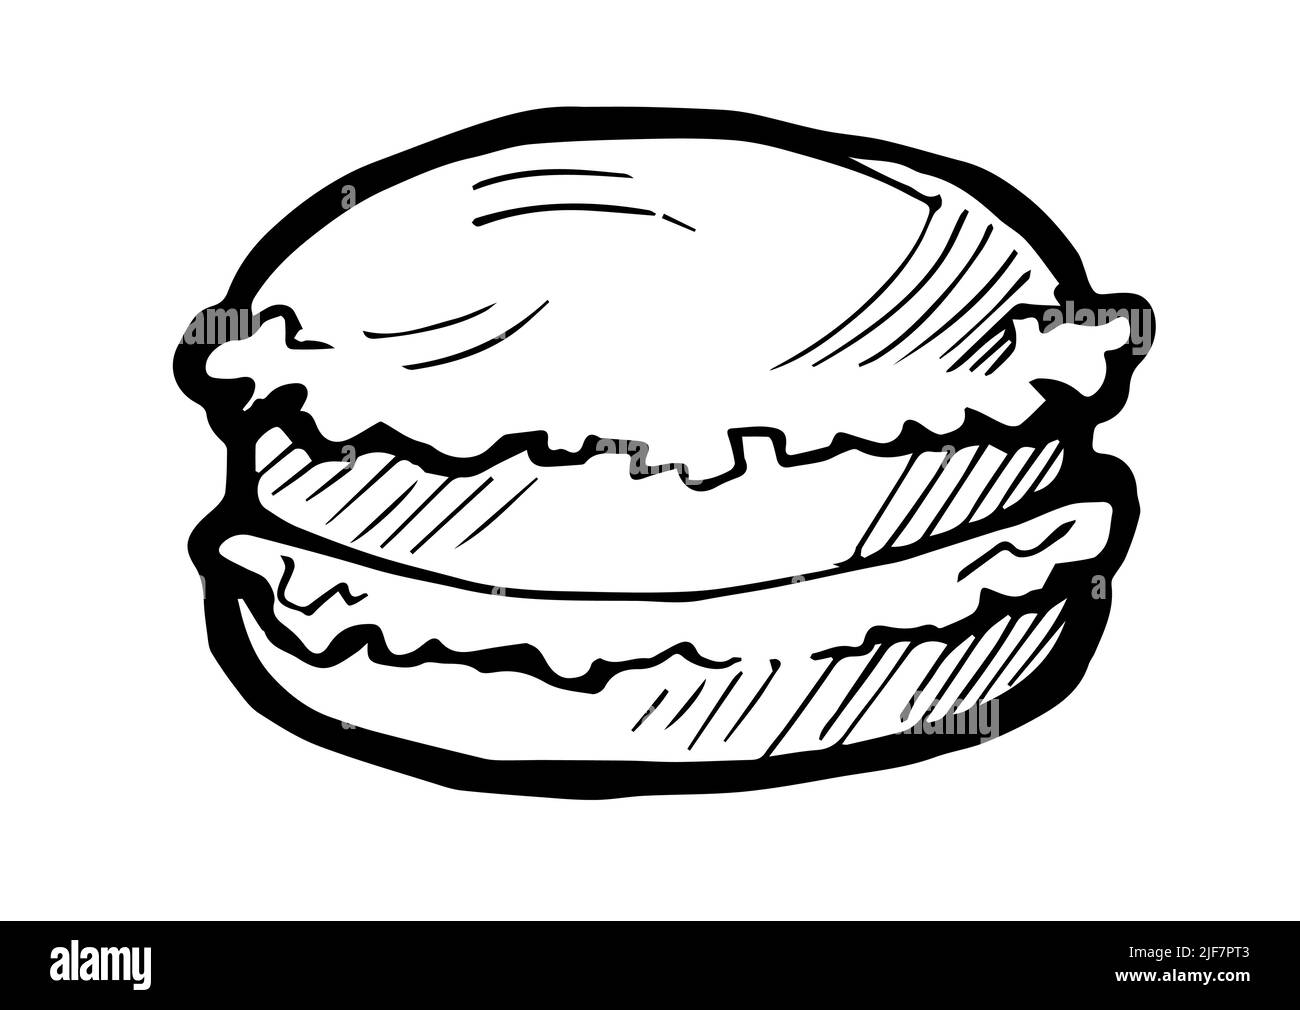 Burger im Brötchen mit Kräutern und Fleisch. Handzeichnung Umriss. Isoliert auf weißem Hintergrund. Laib und Brot süße Brötchen. Monochrome Zeichnung. Vektor Stock Vektor